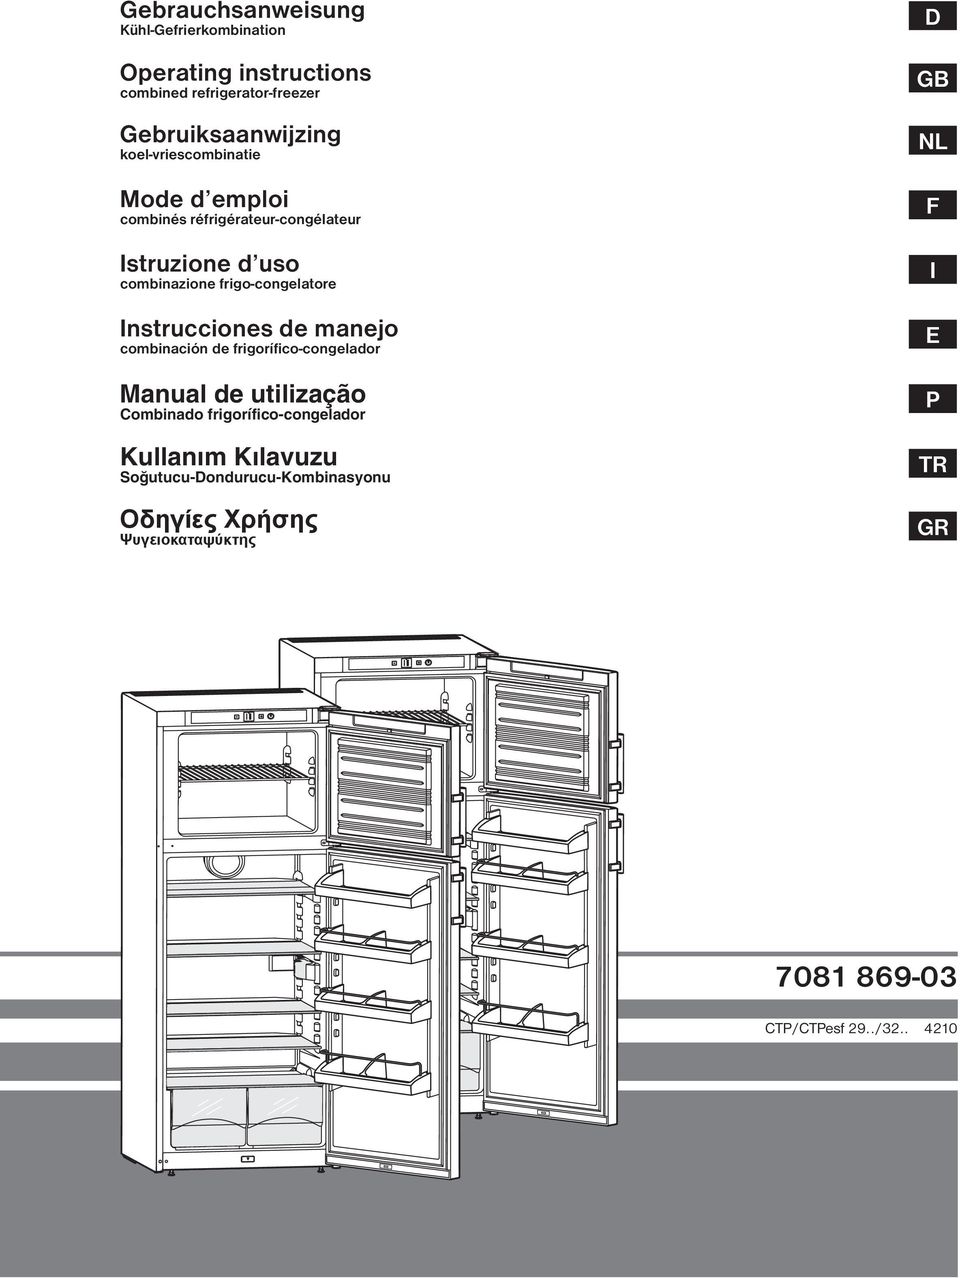 Instrucciones de manejo combinación de frigorífico-congelador Manual de utilização Combinado frigorífico-congelador